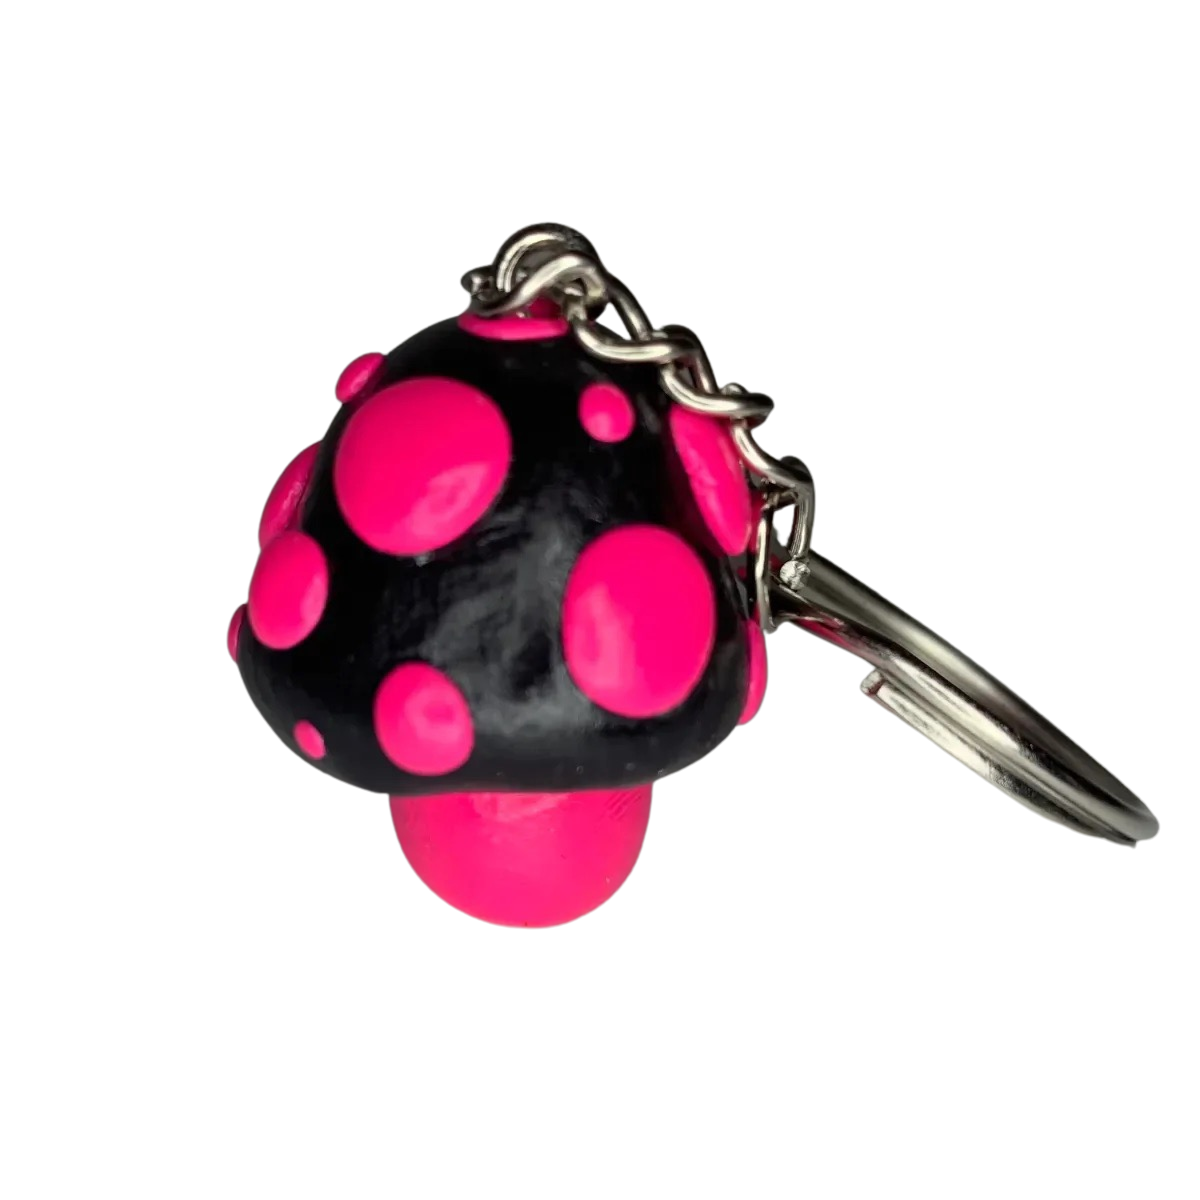 Black and Pink Goth Mushroom Keychains, cute, cartoon, stylized